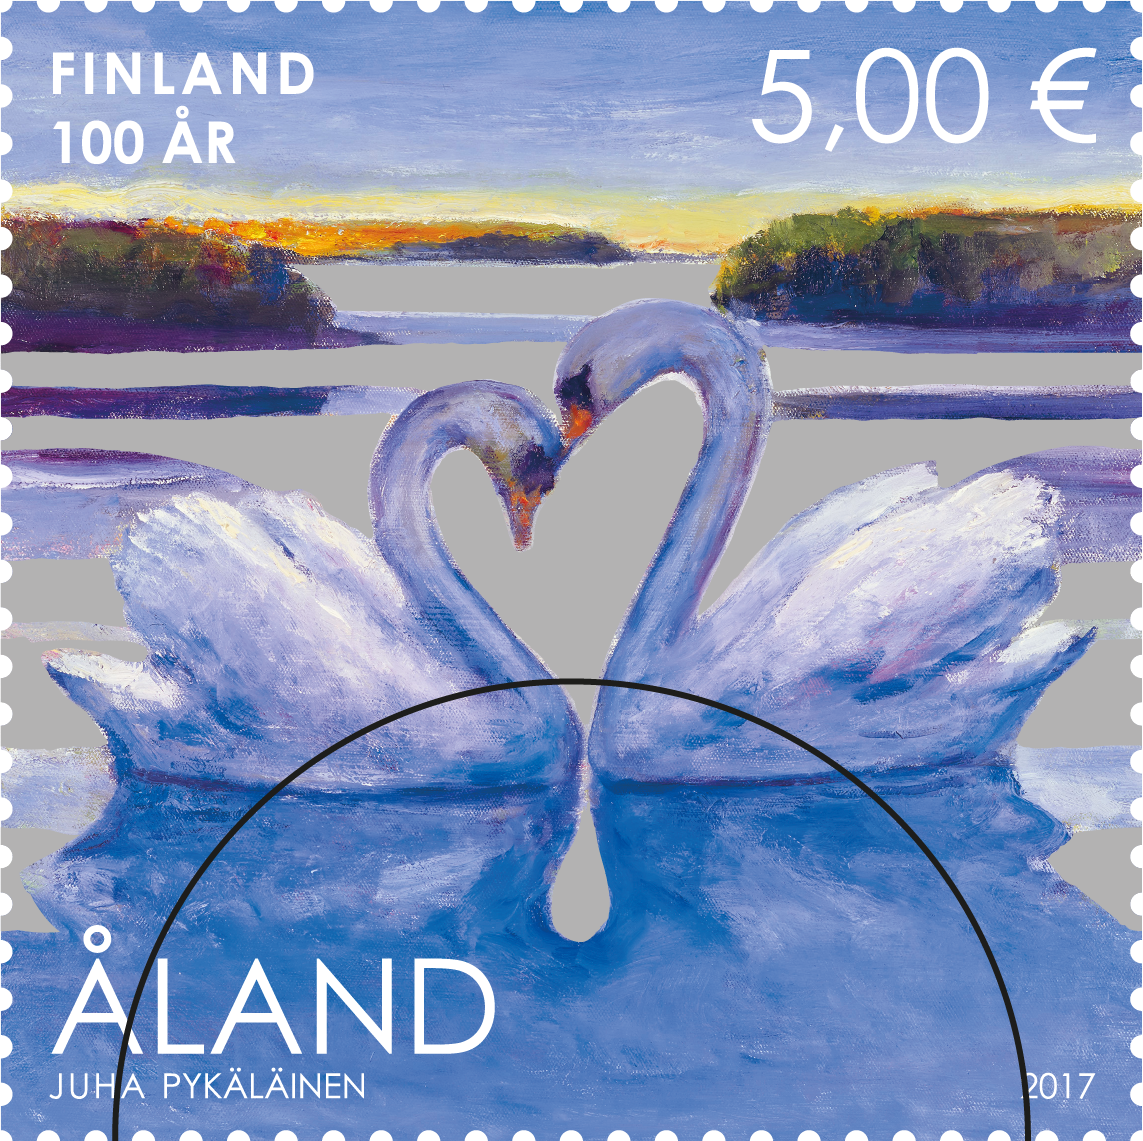 Finland 100 år -stämplat